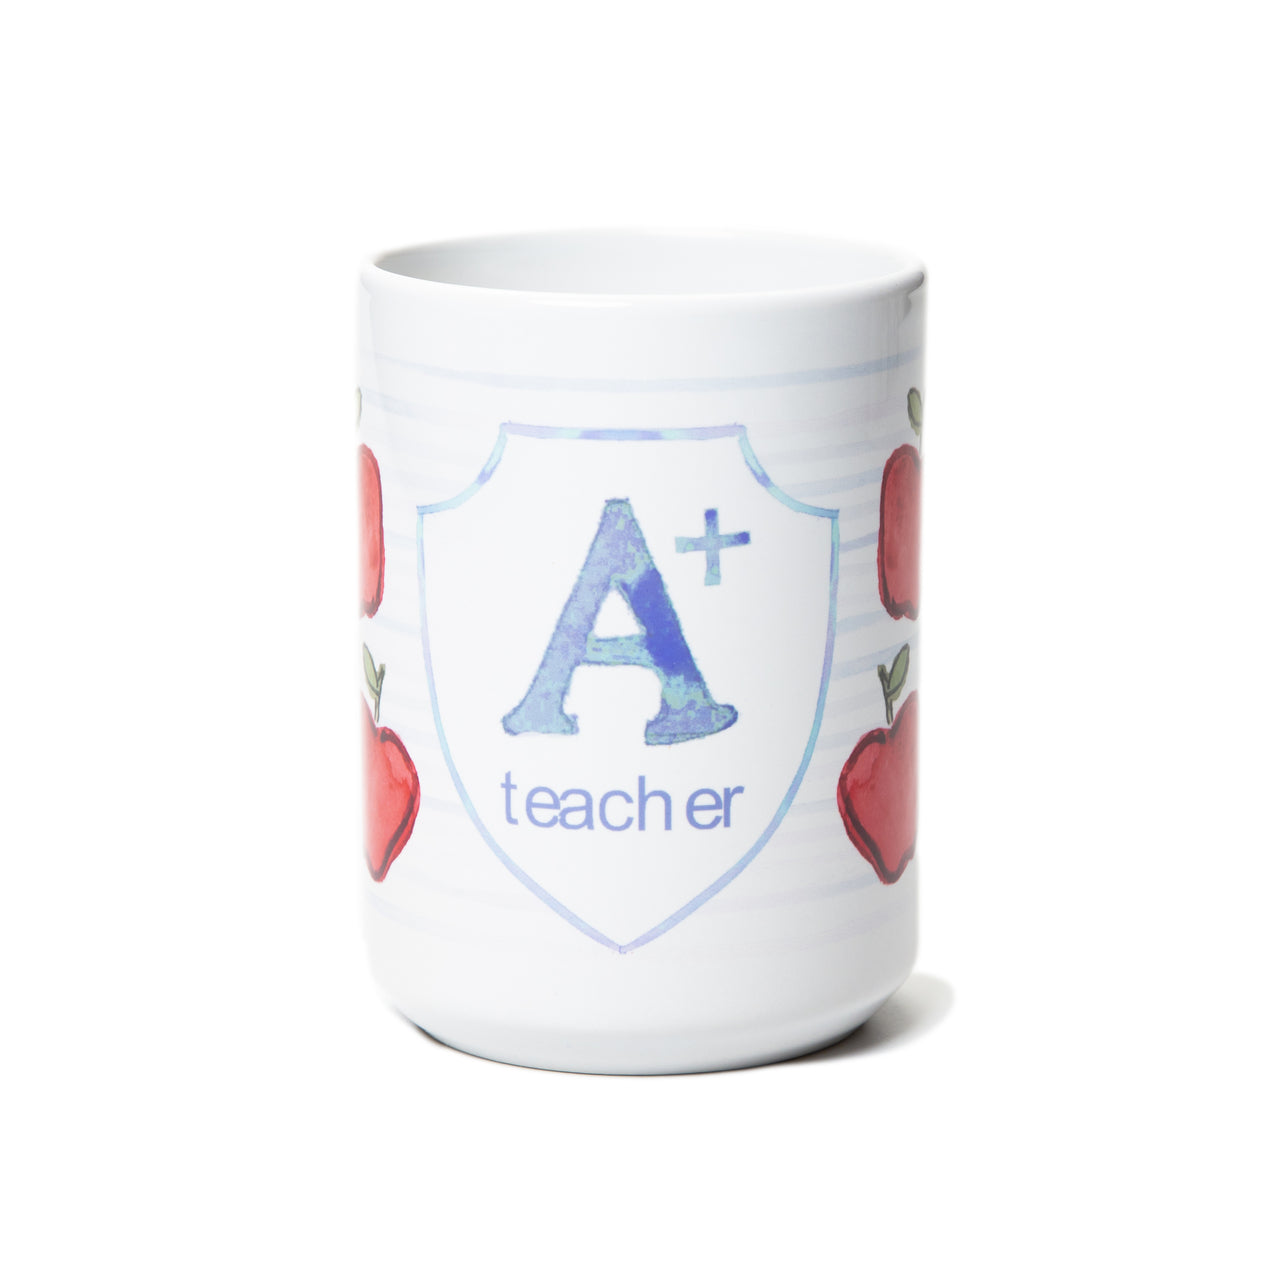 A+ Teacher Mug